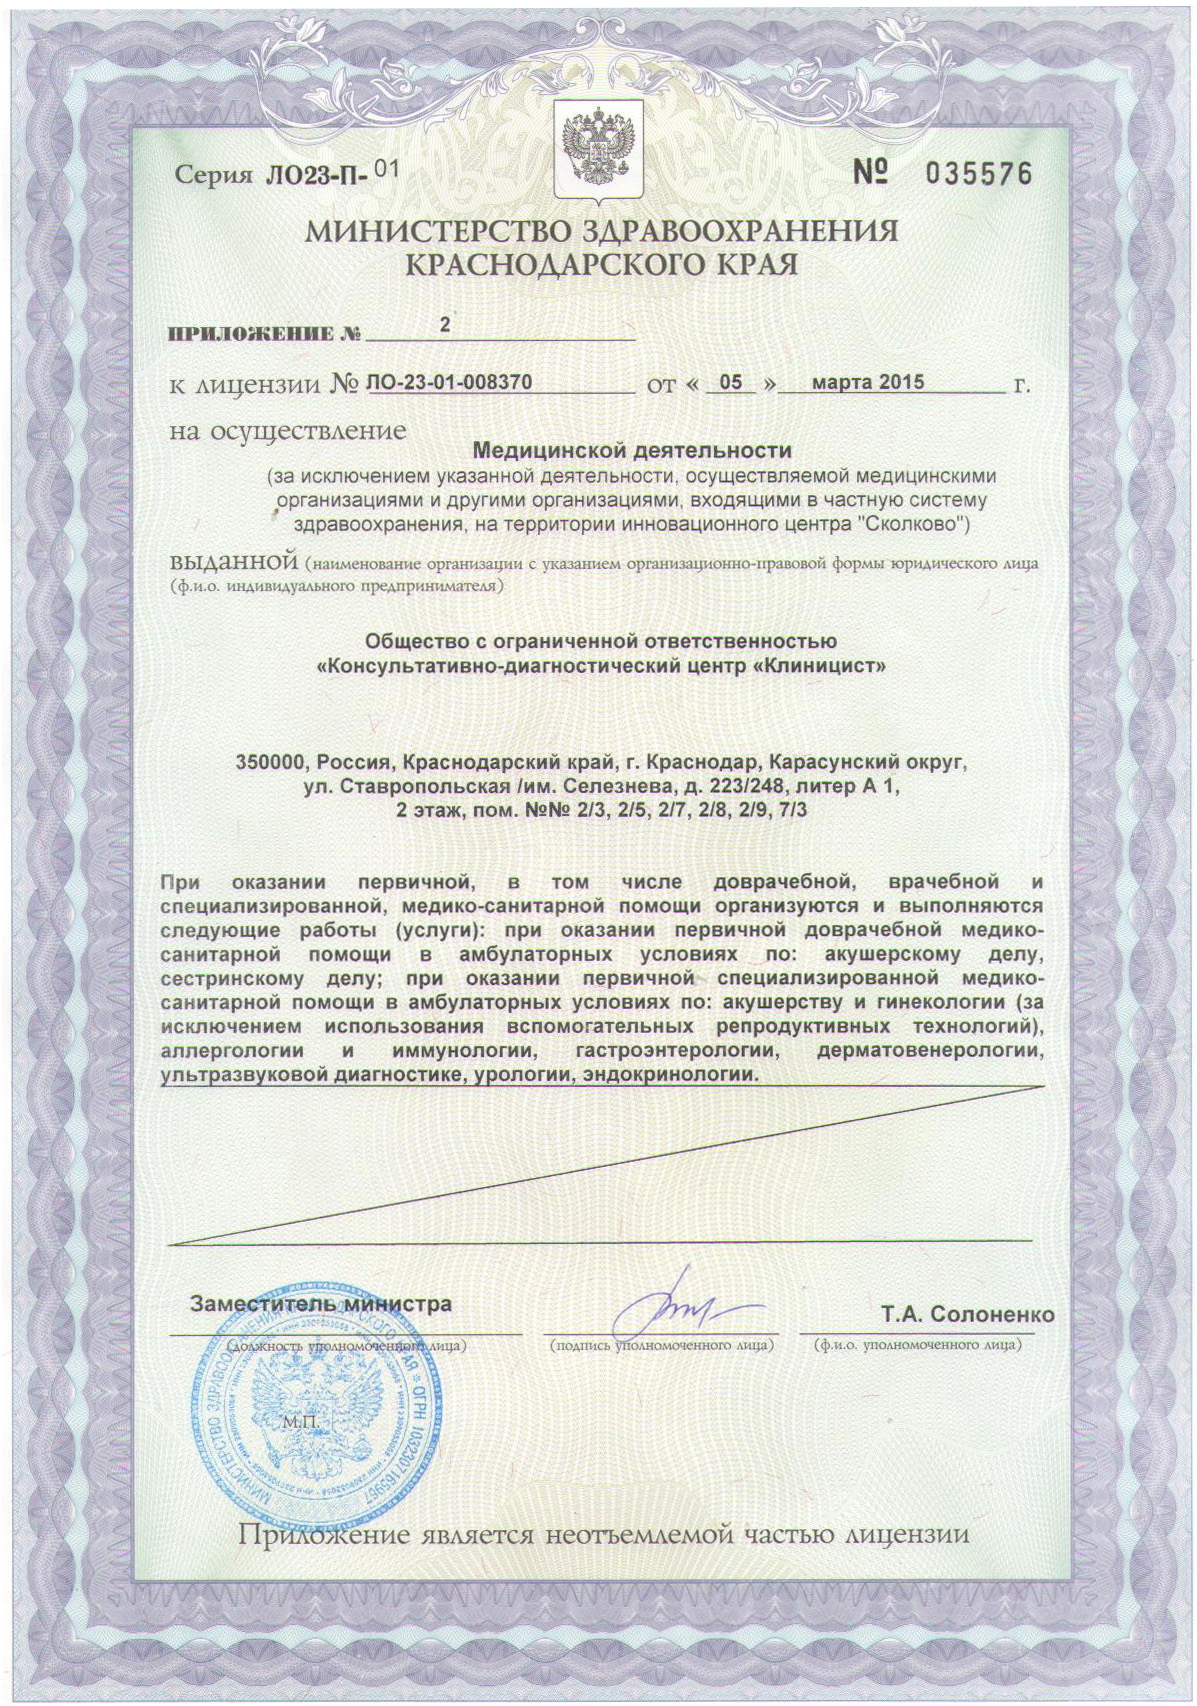 Приложение к лицензии на осуществление медицинской деятельности сети медицинских центров Клиницист